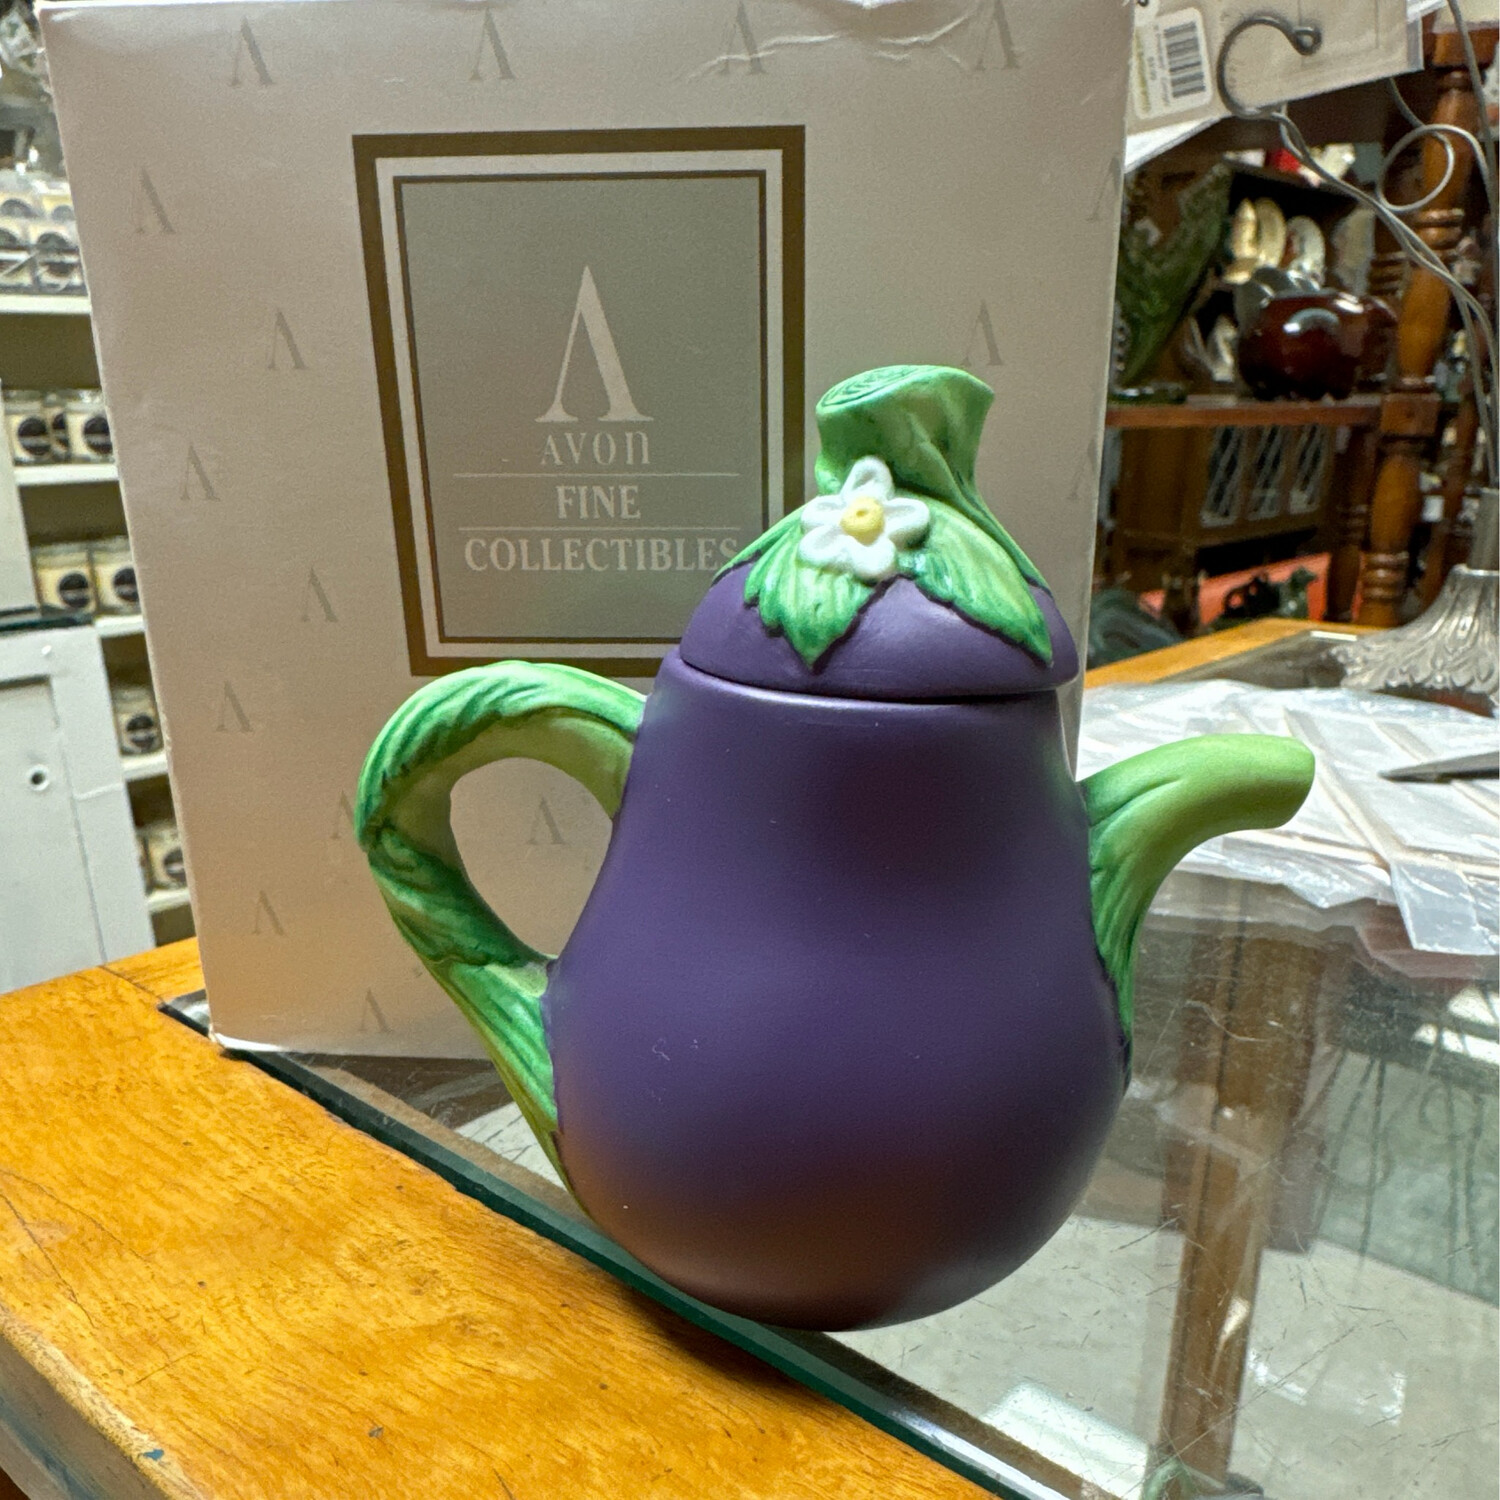 Avon Miniature Teapot "Eggplant"